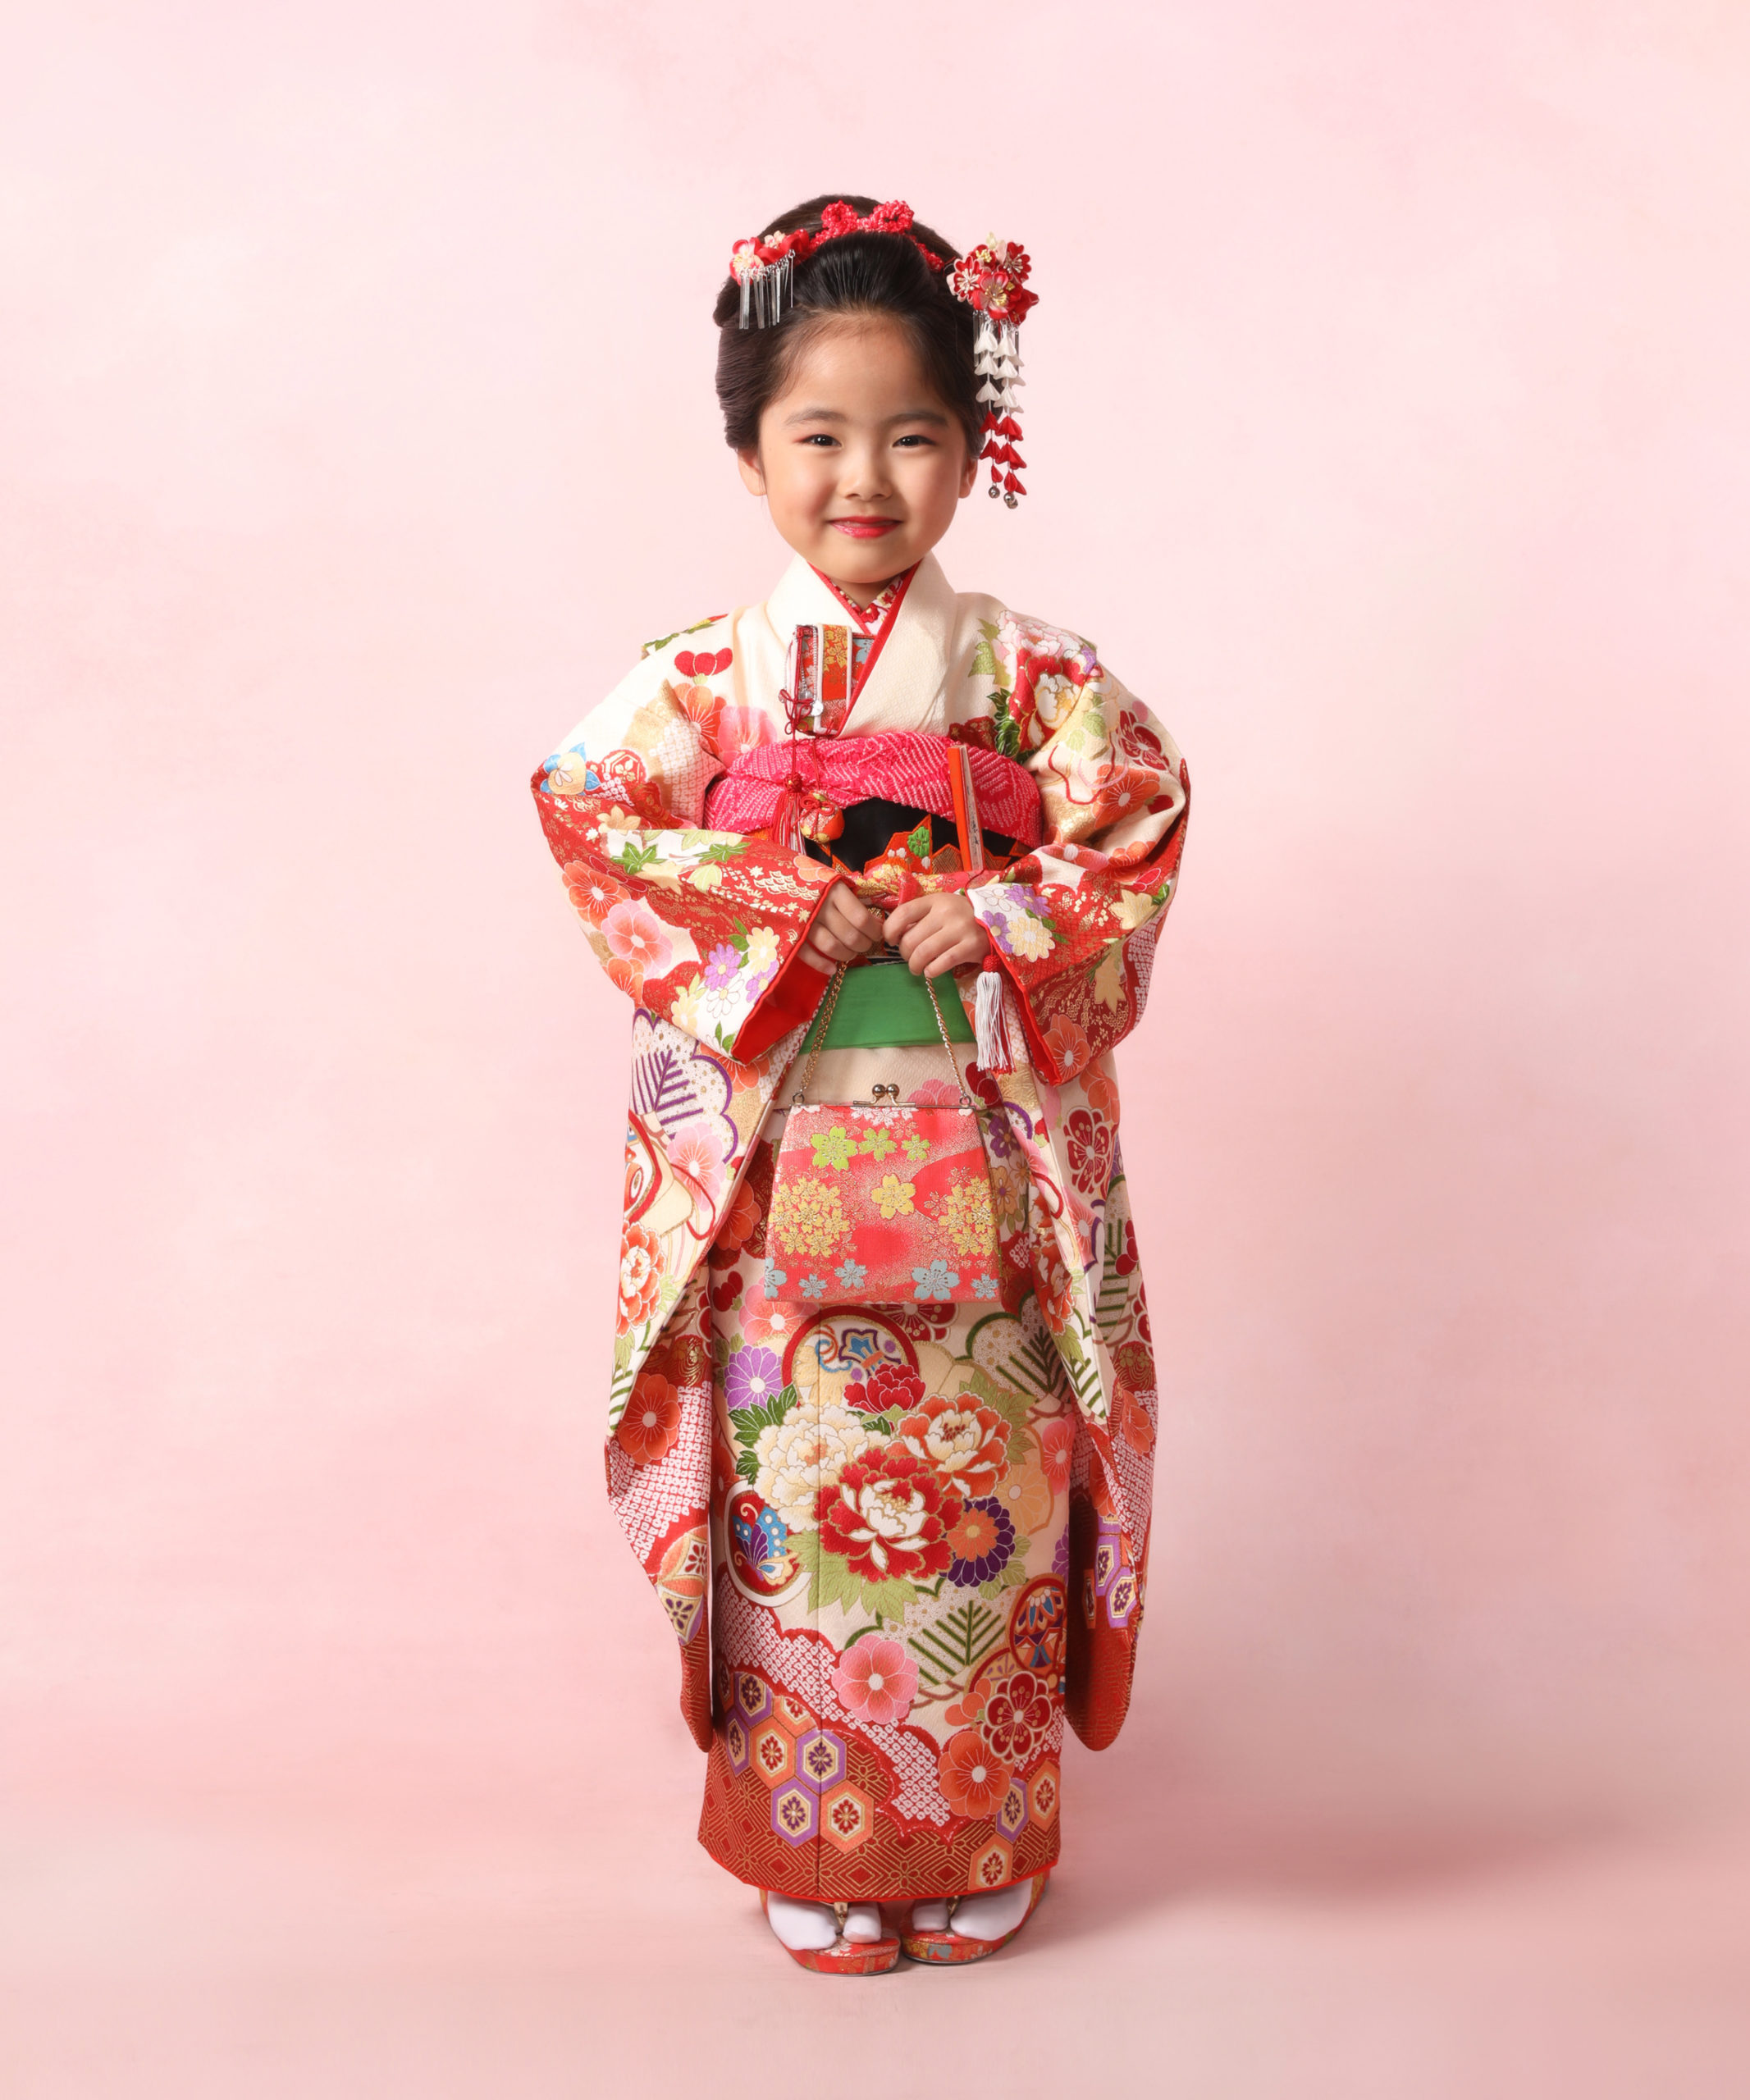 七五三記念写真撮影例(3歳女の子着物)横浜そごう写真館